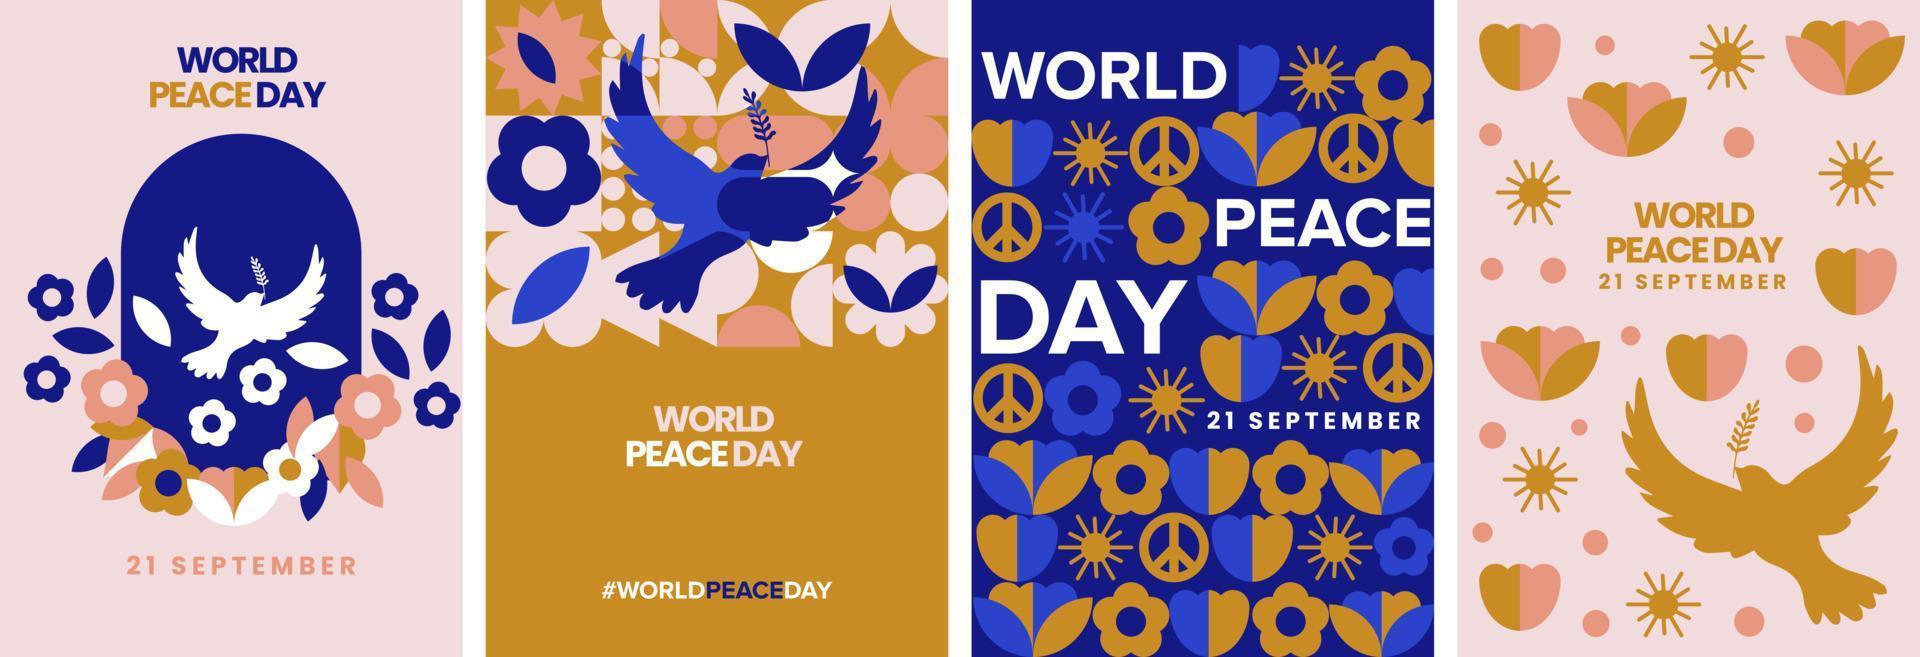 dia mundial da paz na moda geométrica moderna. cartaz de 21 de setembro, coleção de vetores de cartão de saudação